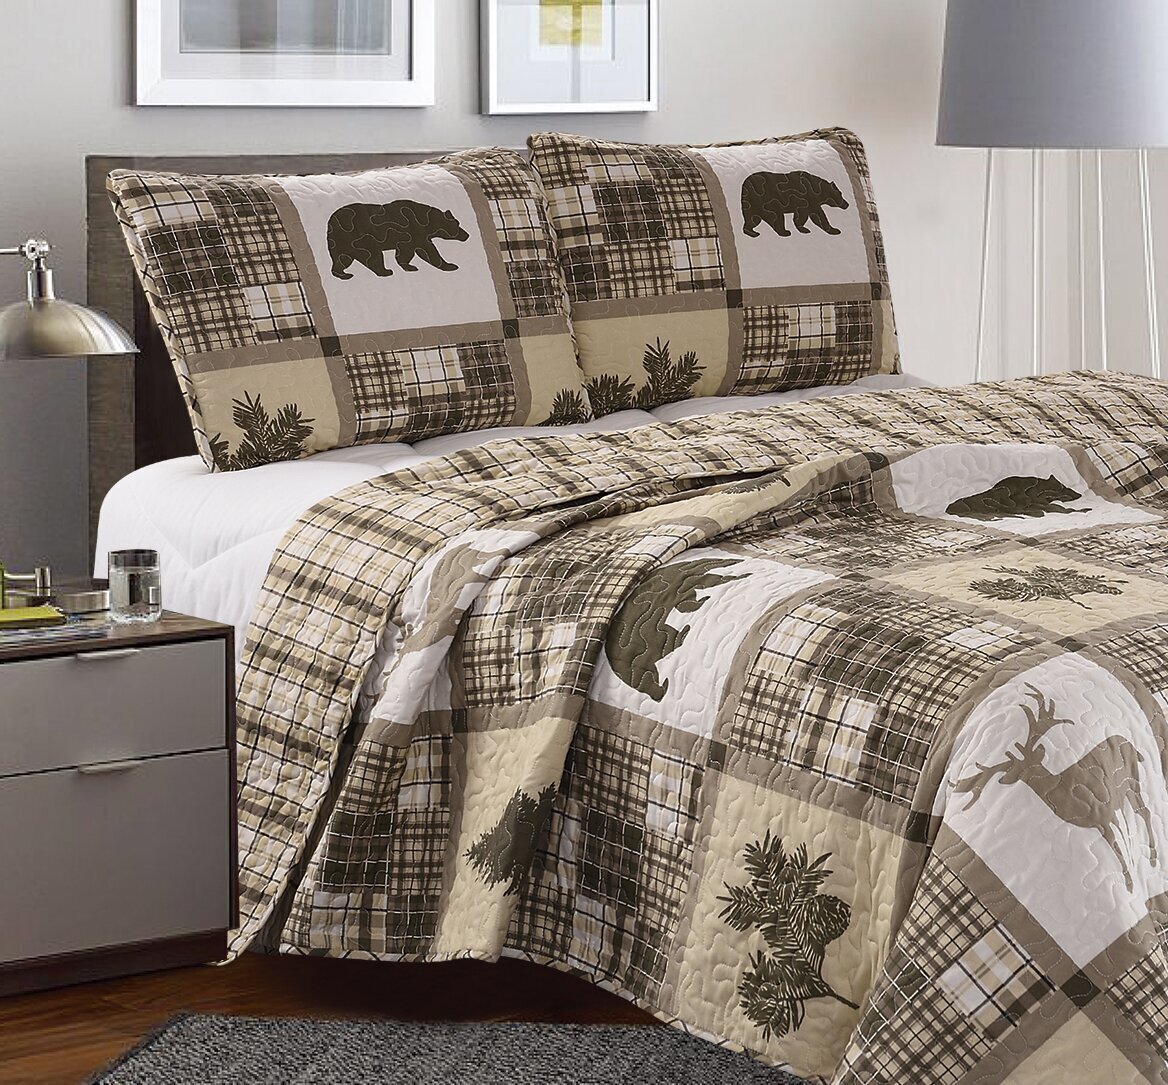 Beige Quilted Comforter With Wildlife Design 